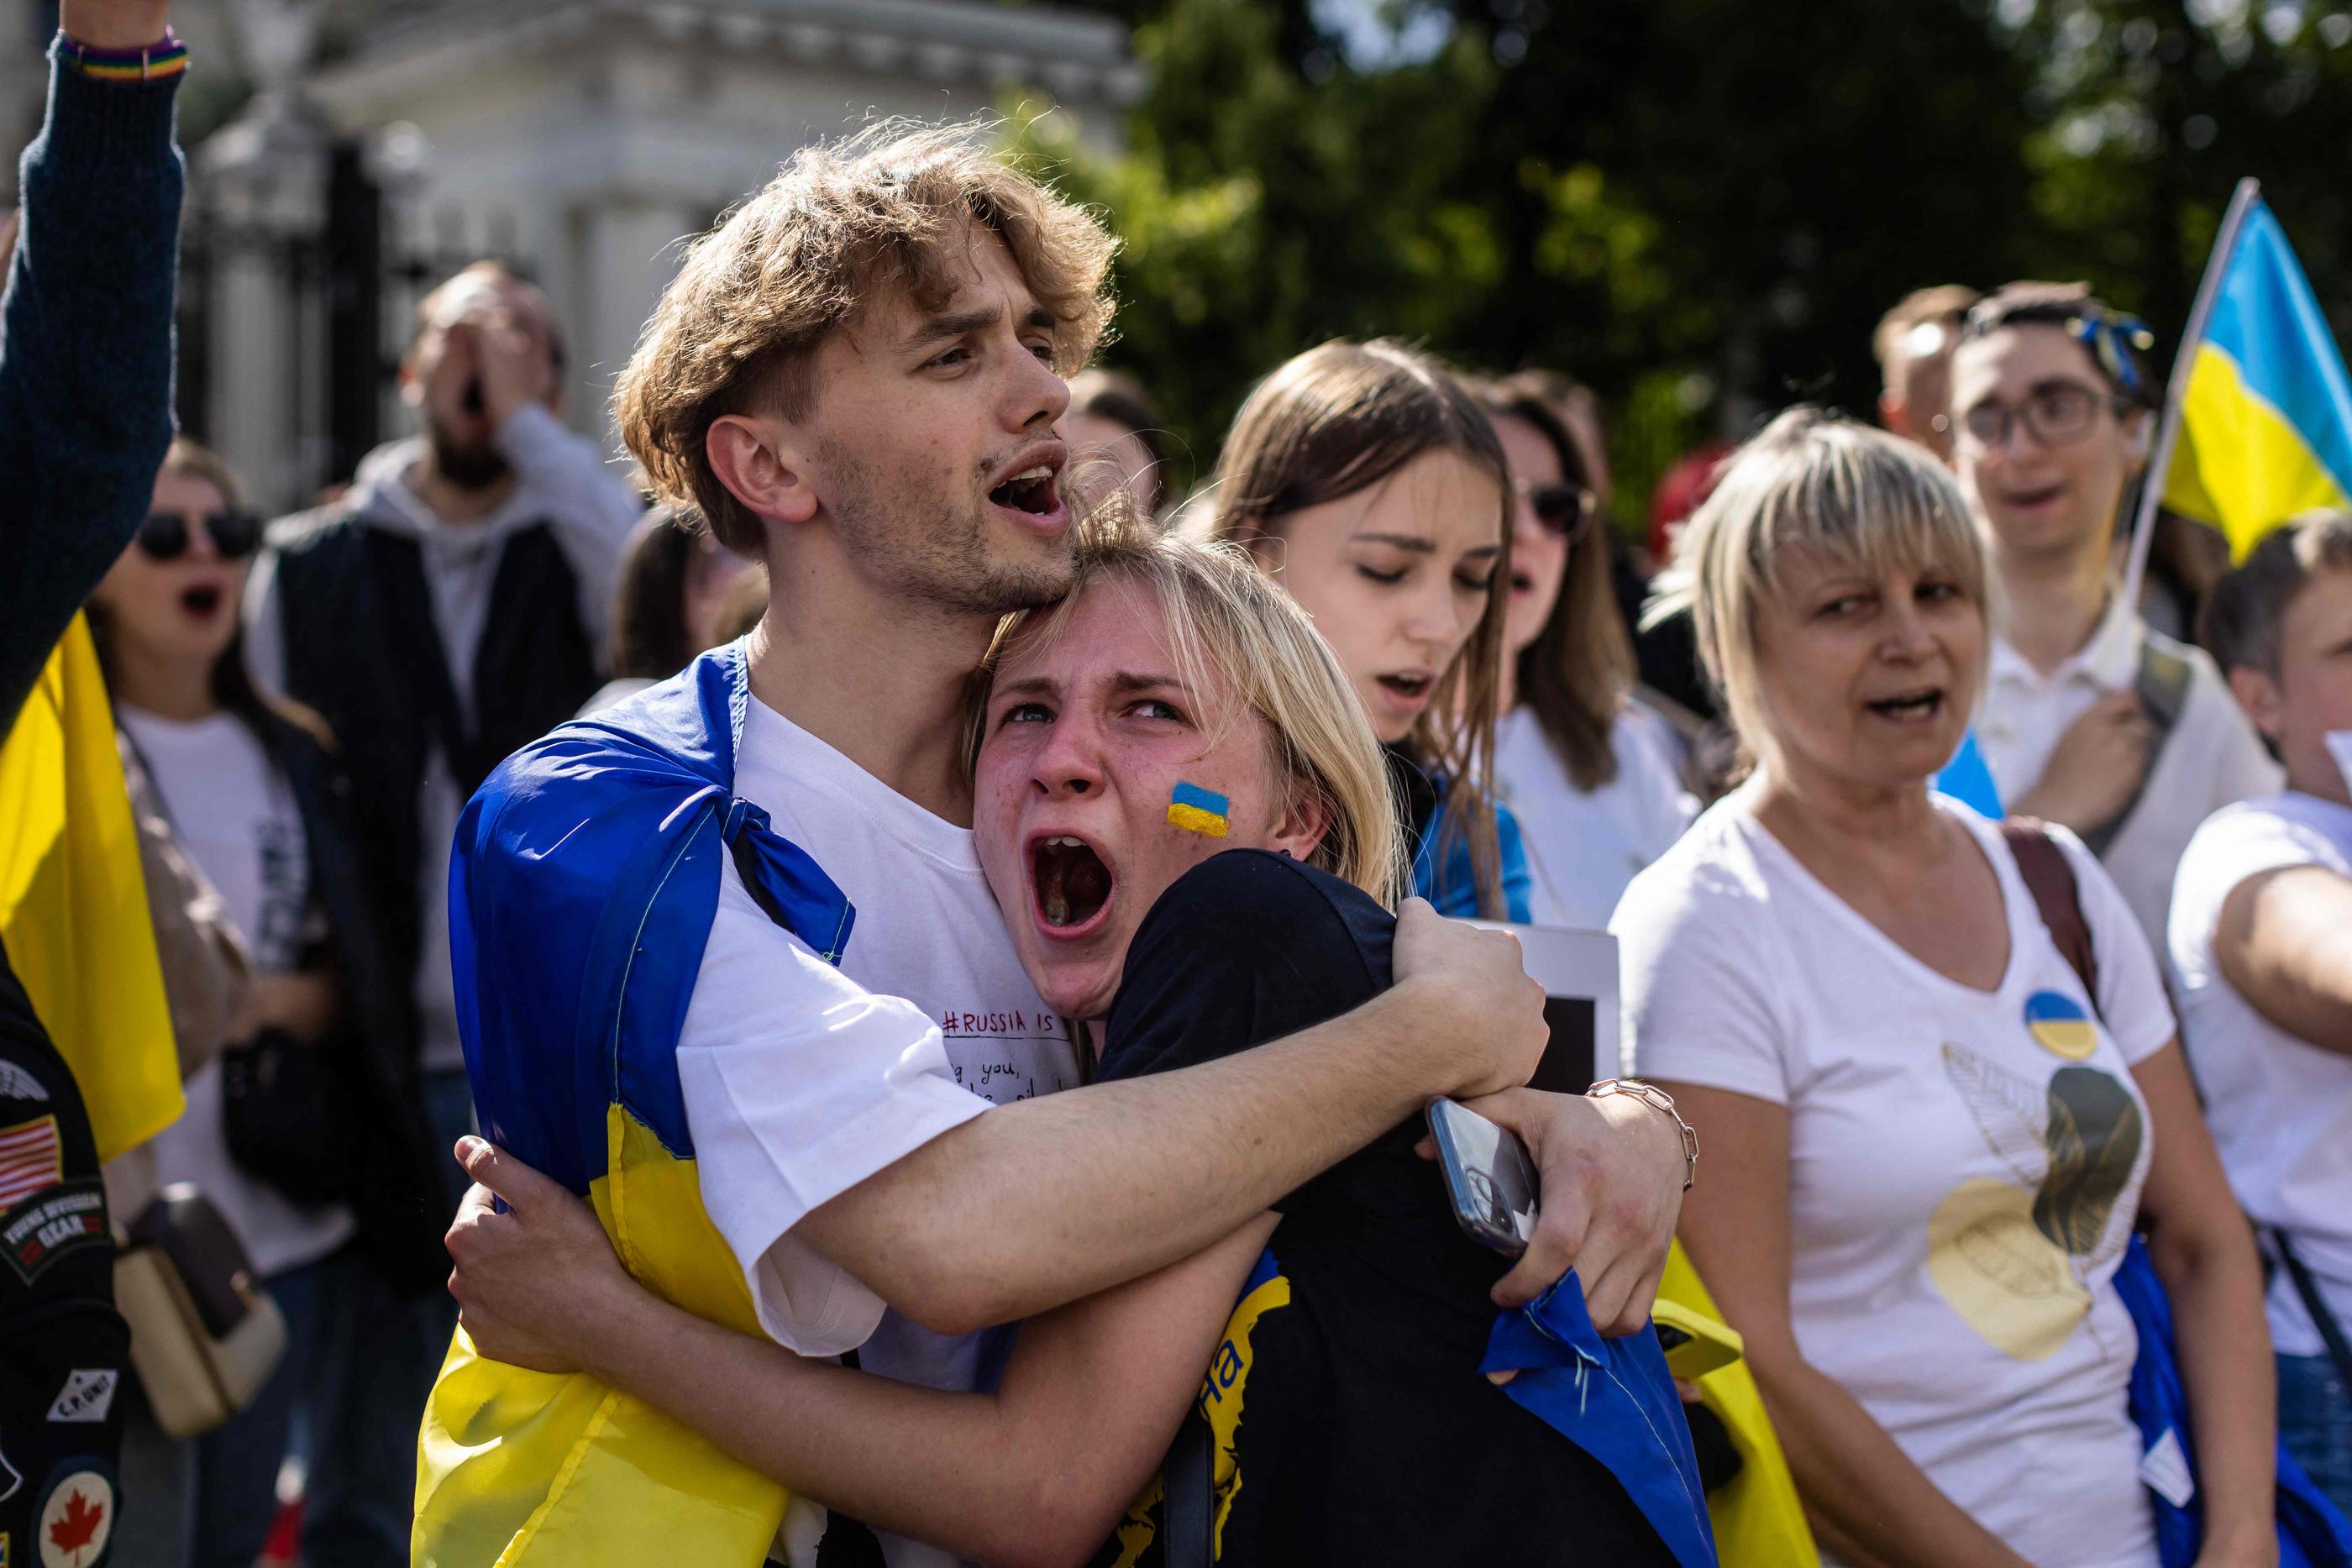 Des manifestants protestent contre l'invasion russe en Ukraine devant l'ambassade de Russie à Varsovie en Pologne, le 17 juillet. AFP/Wojtek Radwanski